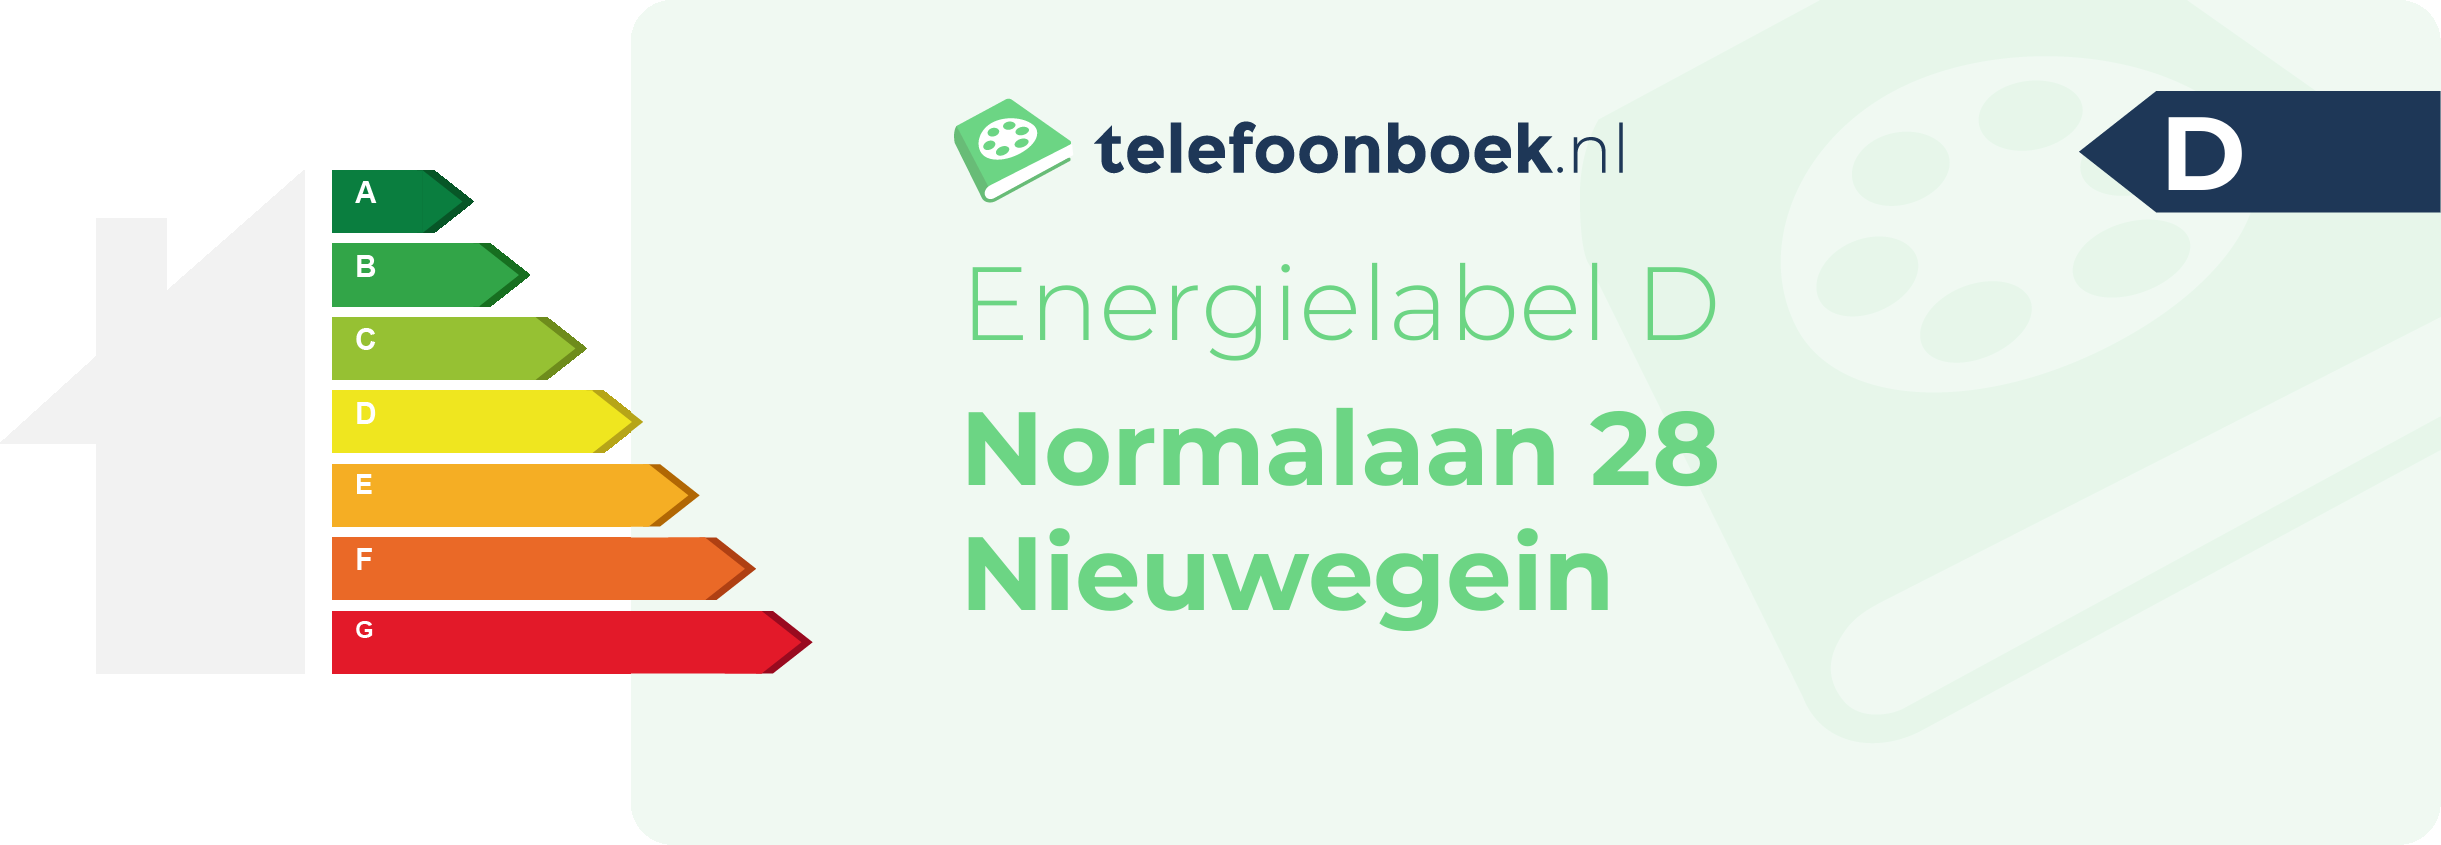 Energielabel Normalaan 28 Nieuwegein